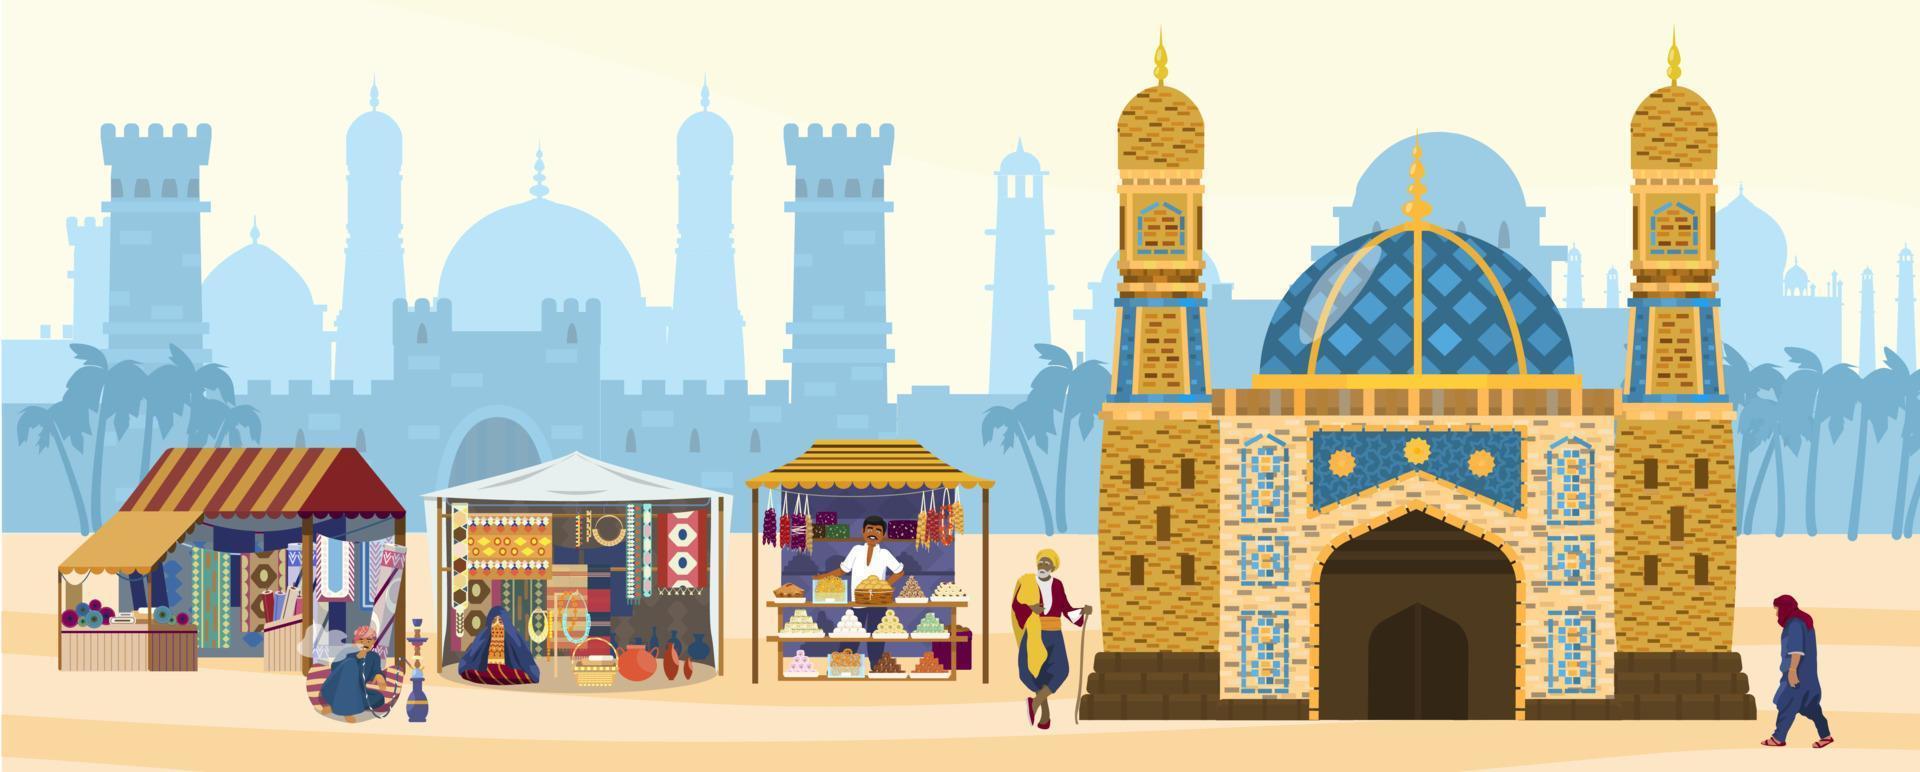 vectorillustratie van moslimstad met moskee, straatwinkels, mensen. oude architectuur op de achtergrond, kastelen, huizen, poorten, torens. authentieke goederen te koop. tapijten, snoep, keramiek. vlak. vector